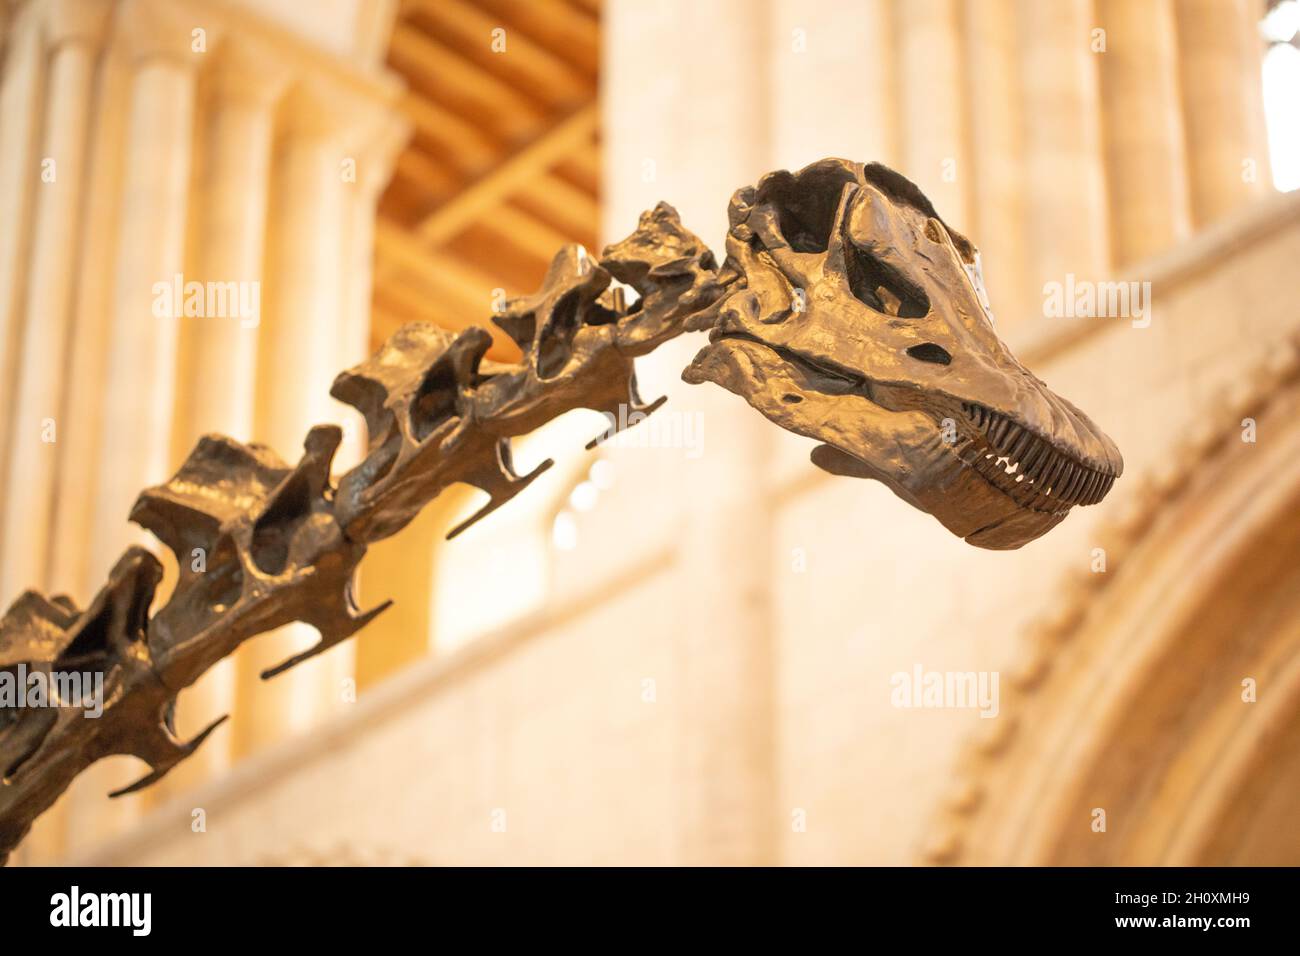 Testa e collo superiore o vertebre cervicali. "Dippy". Diplodocus carnegie, sauropode, dinosauro, rivelando denti simili a pettine, dentizione, abilitando l'anima Foto Stock